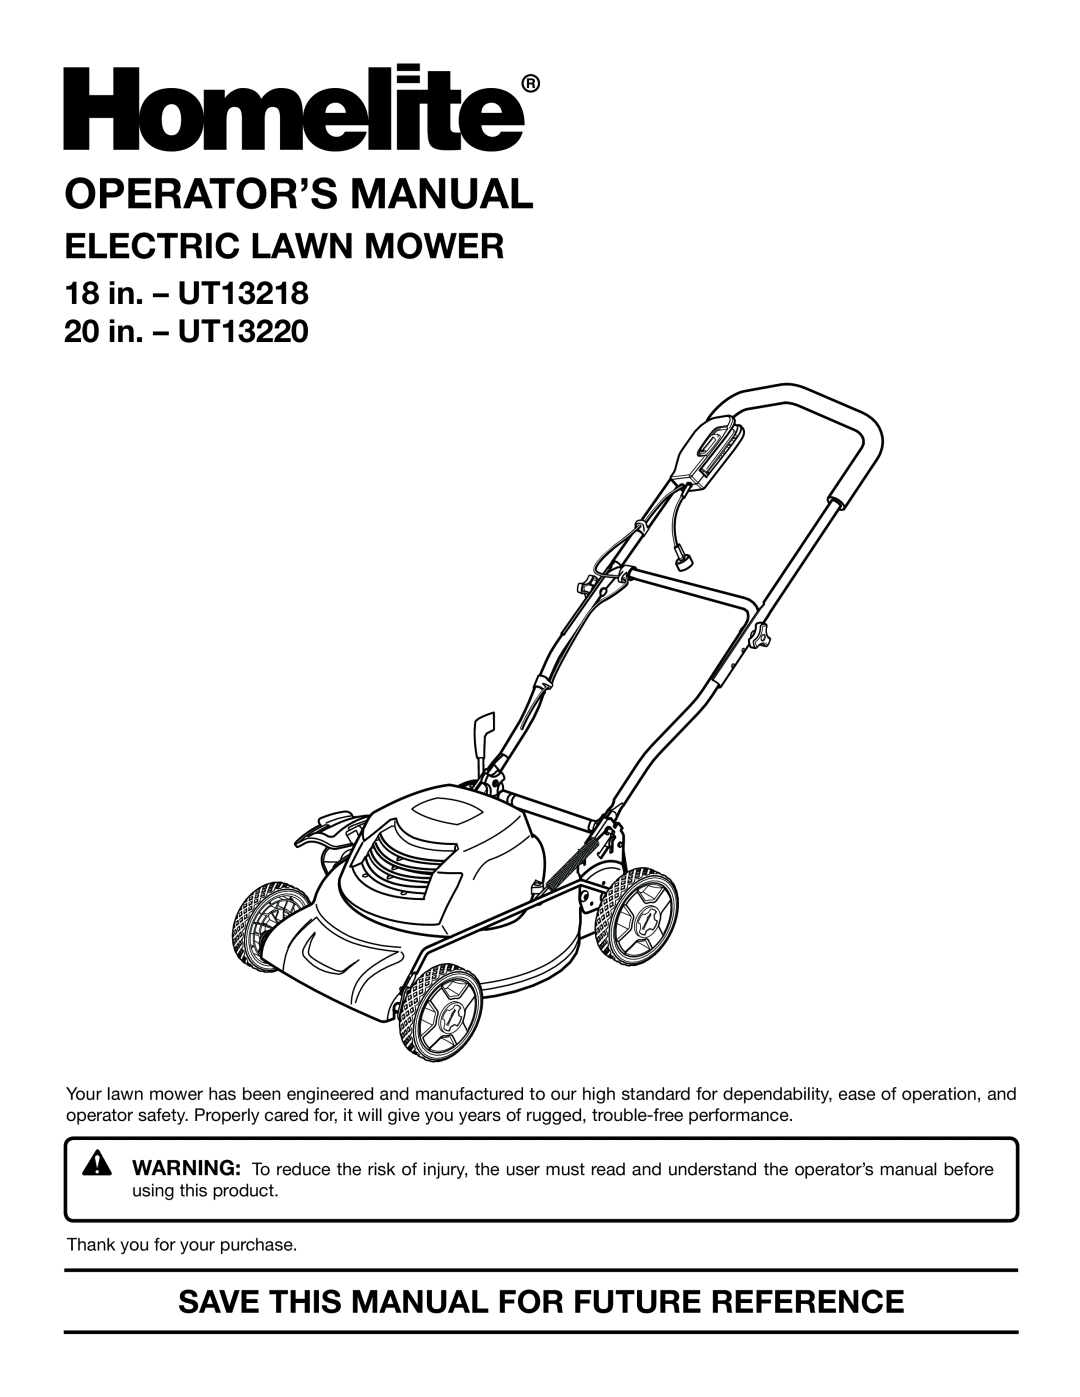 Homelite manual Operator’S Manual, Electric Lawn Mower, 18 in. - UT13218 20 in. - UT13220 